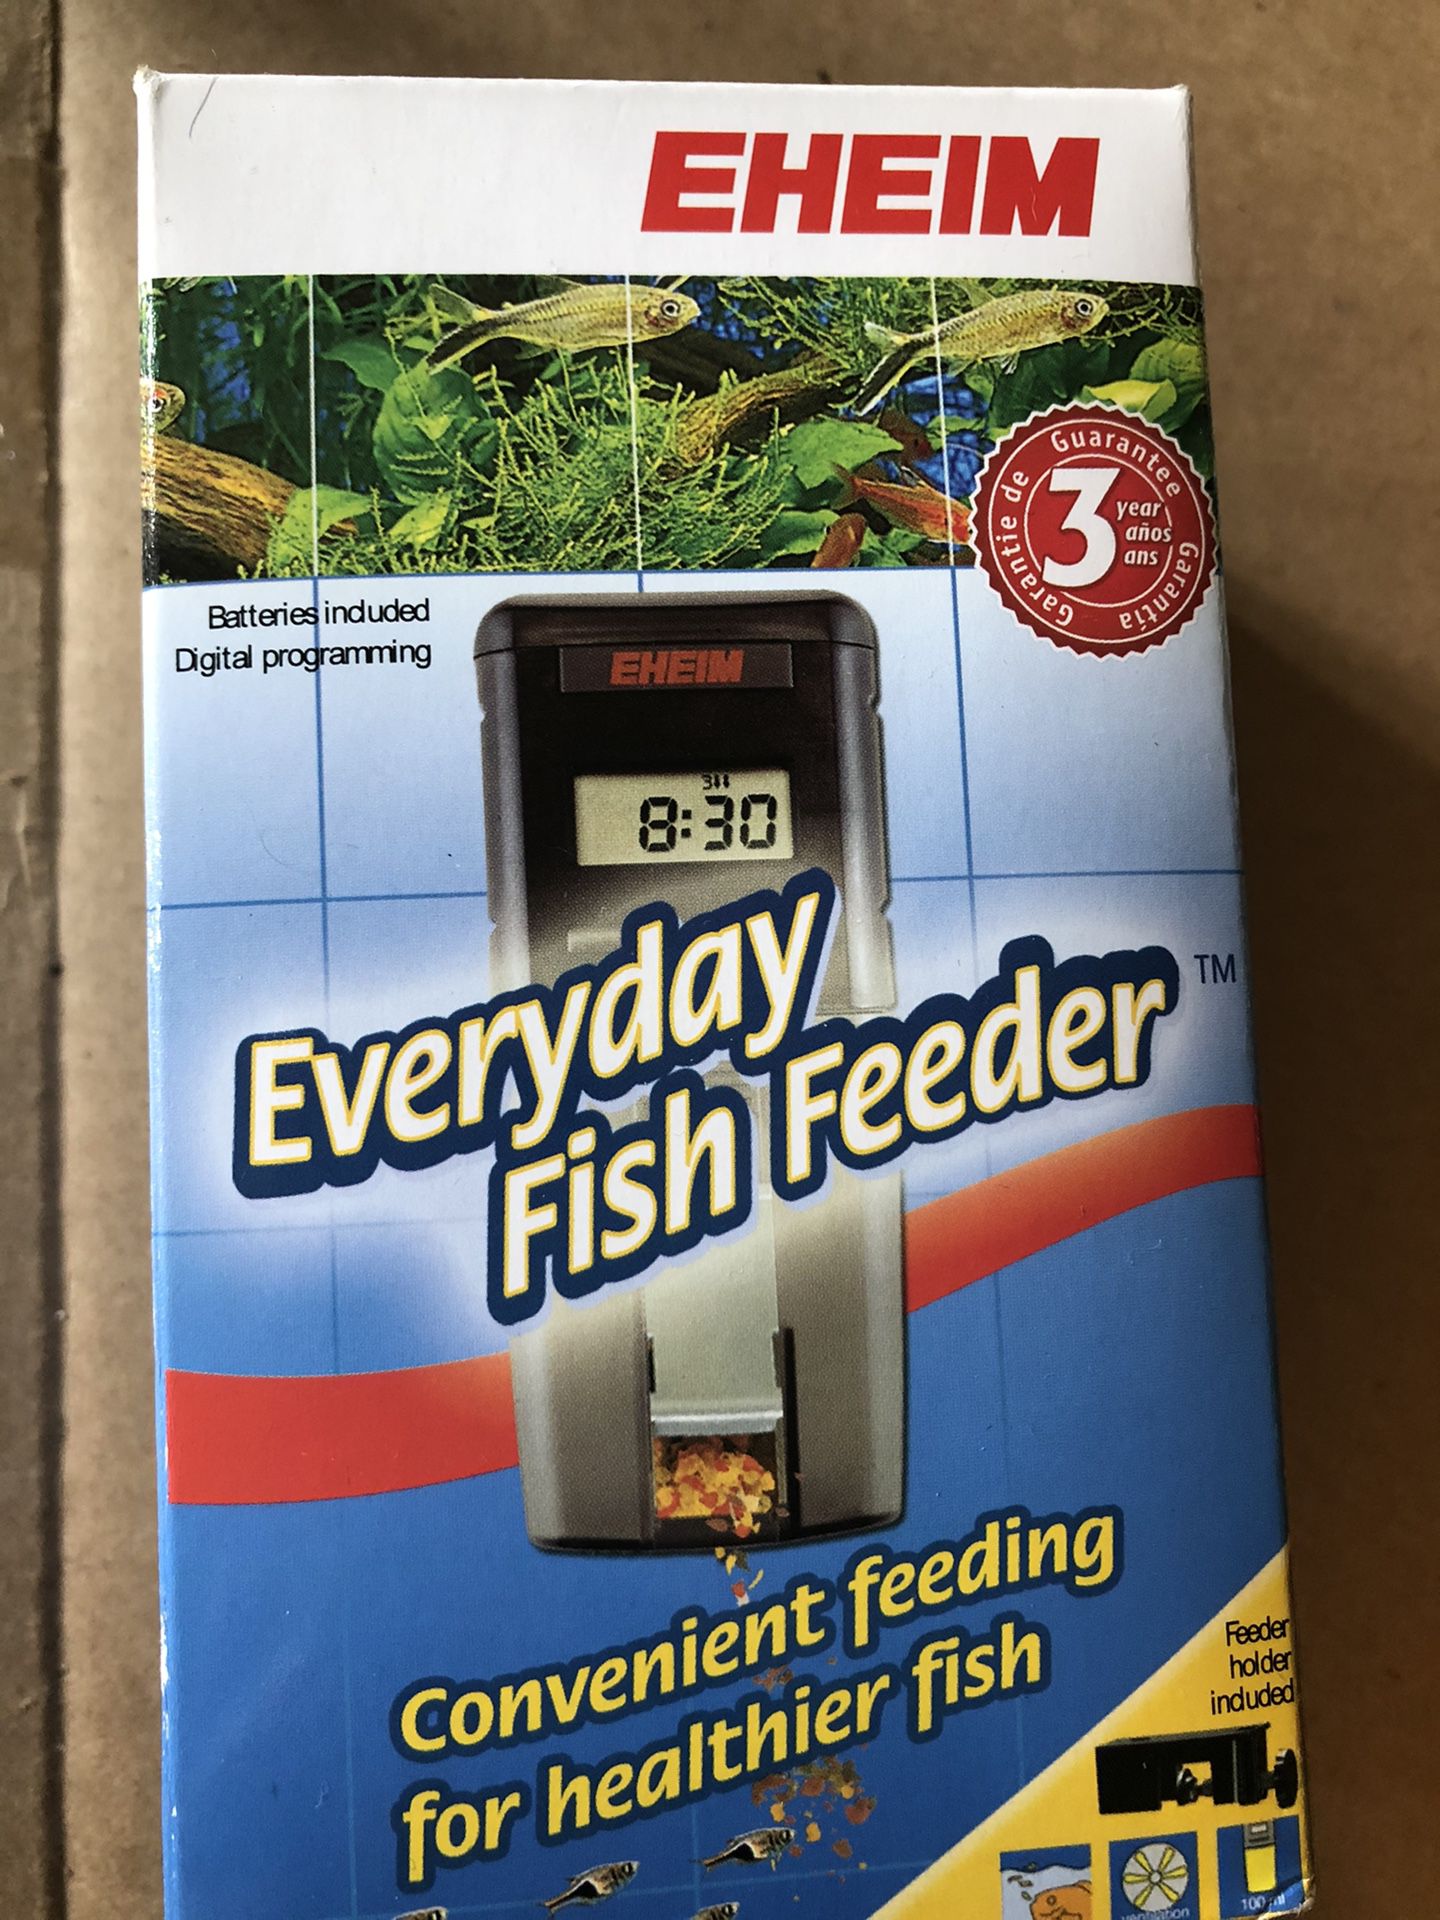 Aquarium fish feeder - new